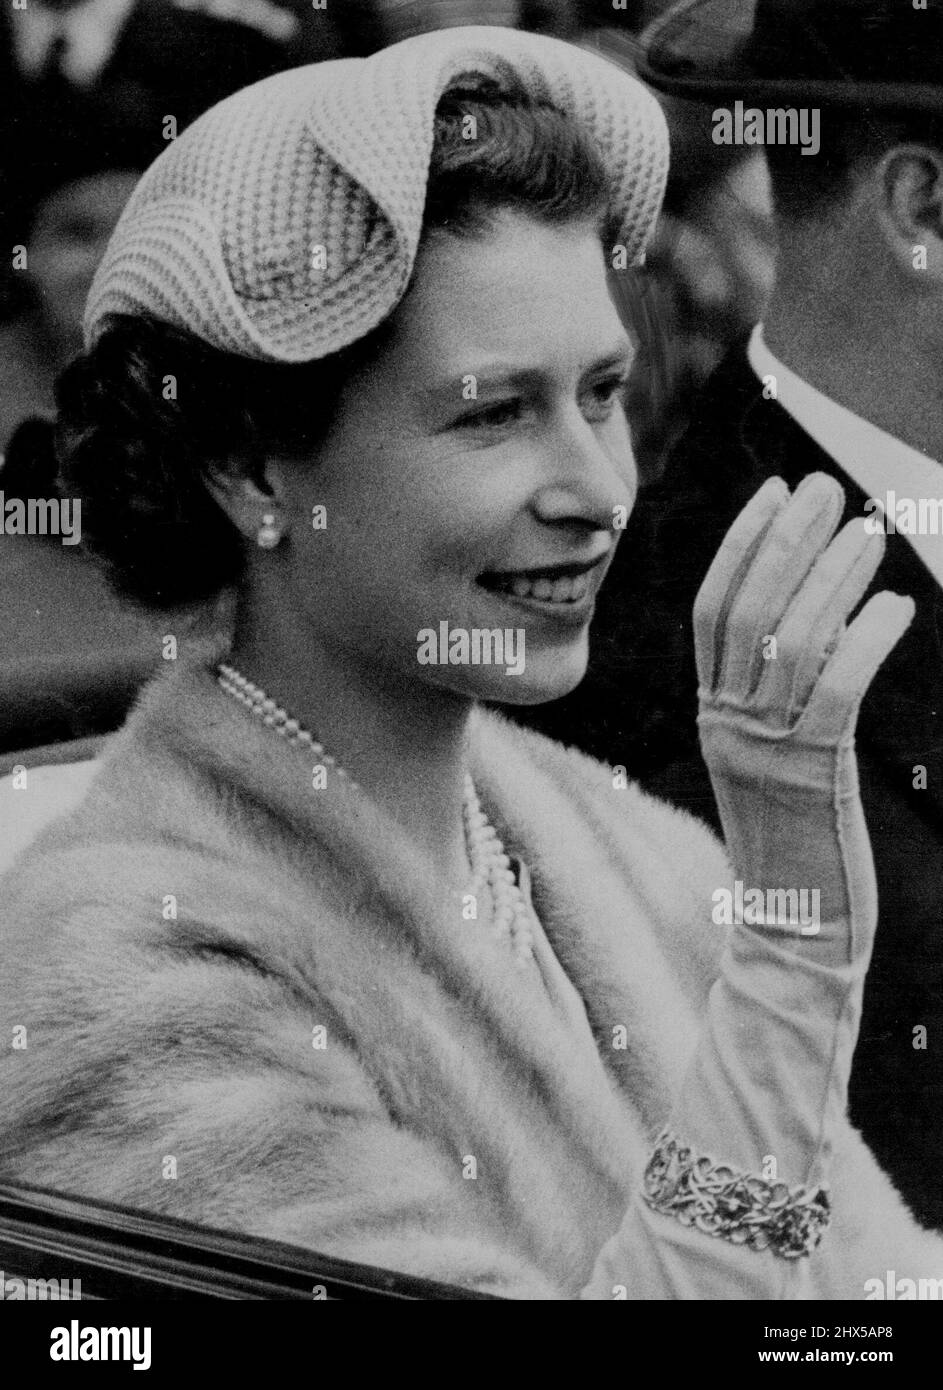 La mode du dernier jour de la Reine la Reine, souriante et portant un joli chapeau blanc à bords ondulés, se déplace le long du cours d'Ascot avec le duc d'Édimbourg, le dernier jour de la rencontre royale. 18 juin 1954. Banque D'Images